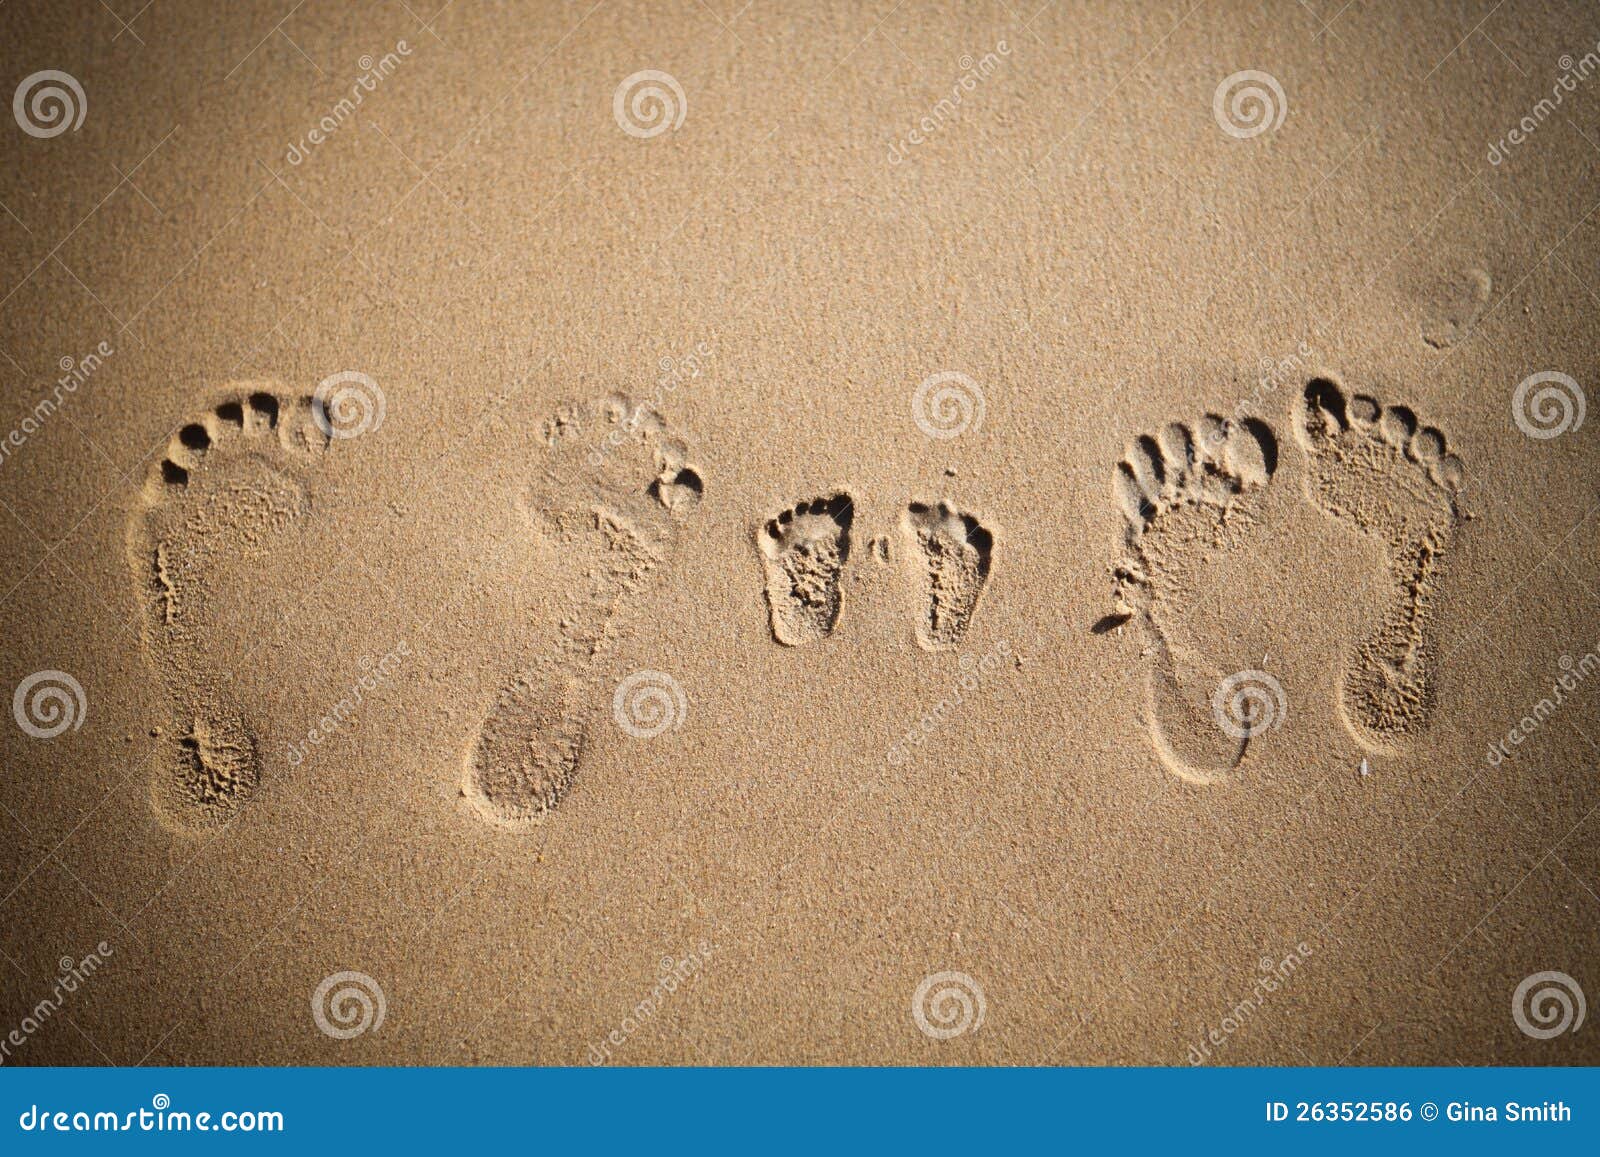 Текст следы на песке. Следы на песке. Отпечаток ноги. Отпечаток стопы на песке. Следы ребенка на песке.